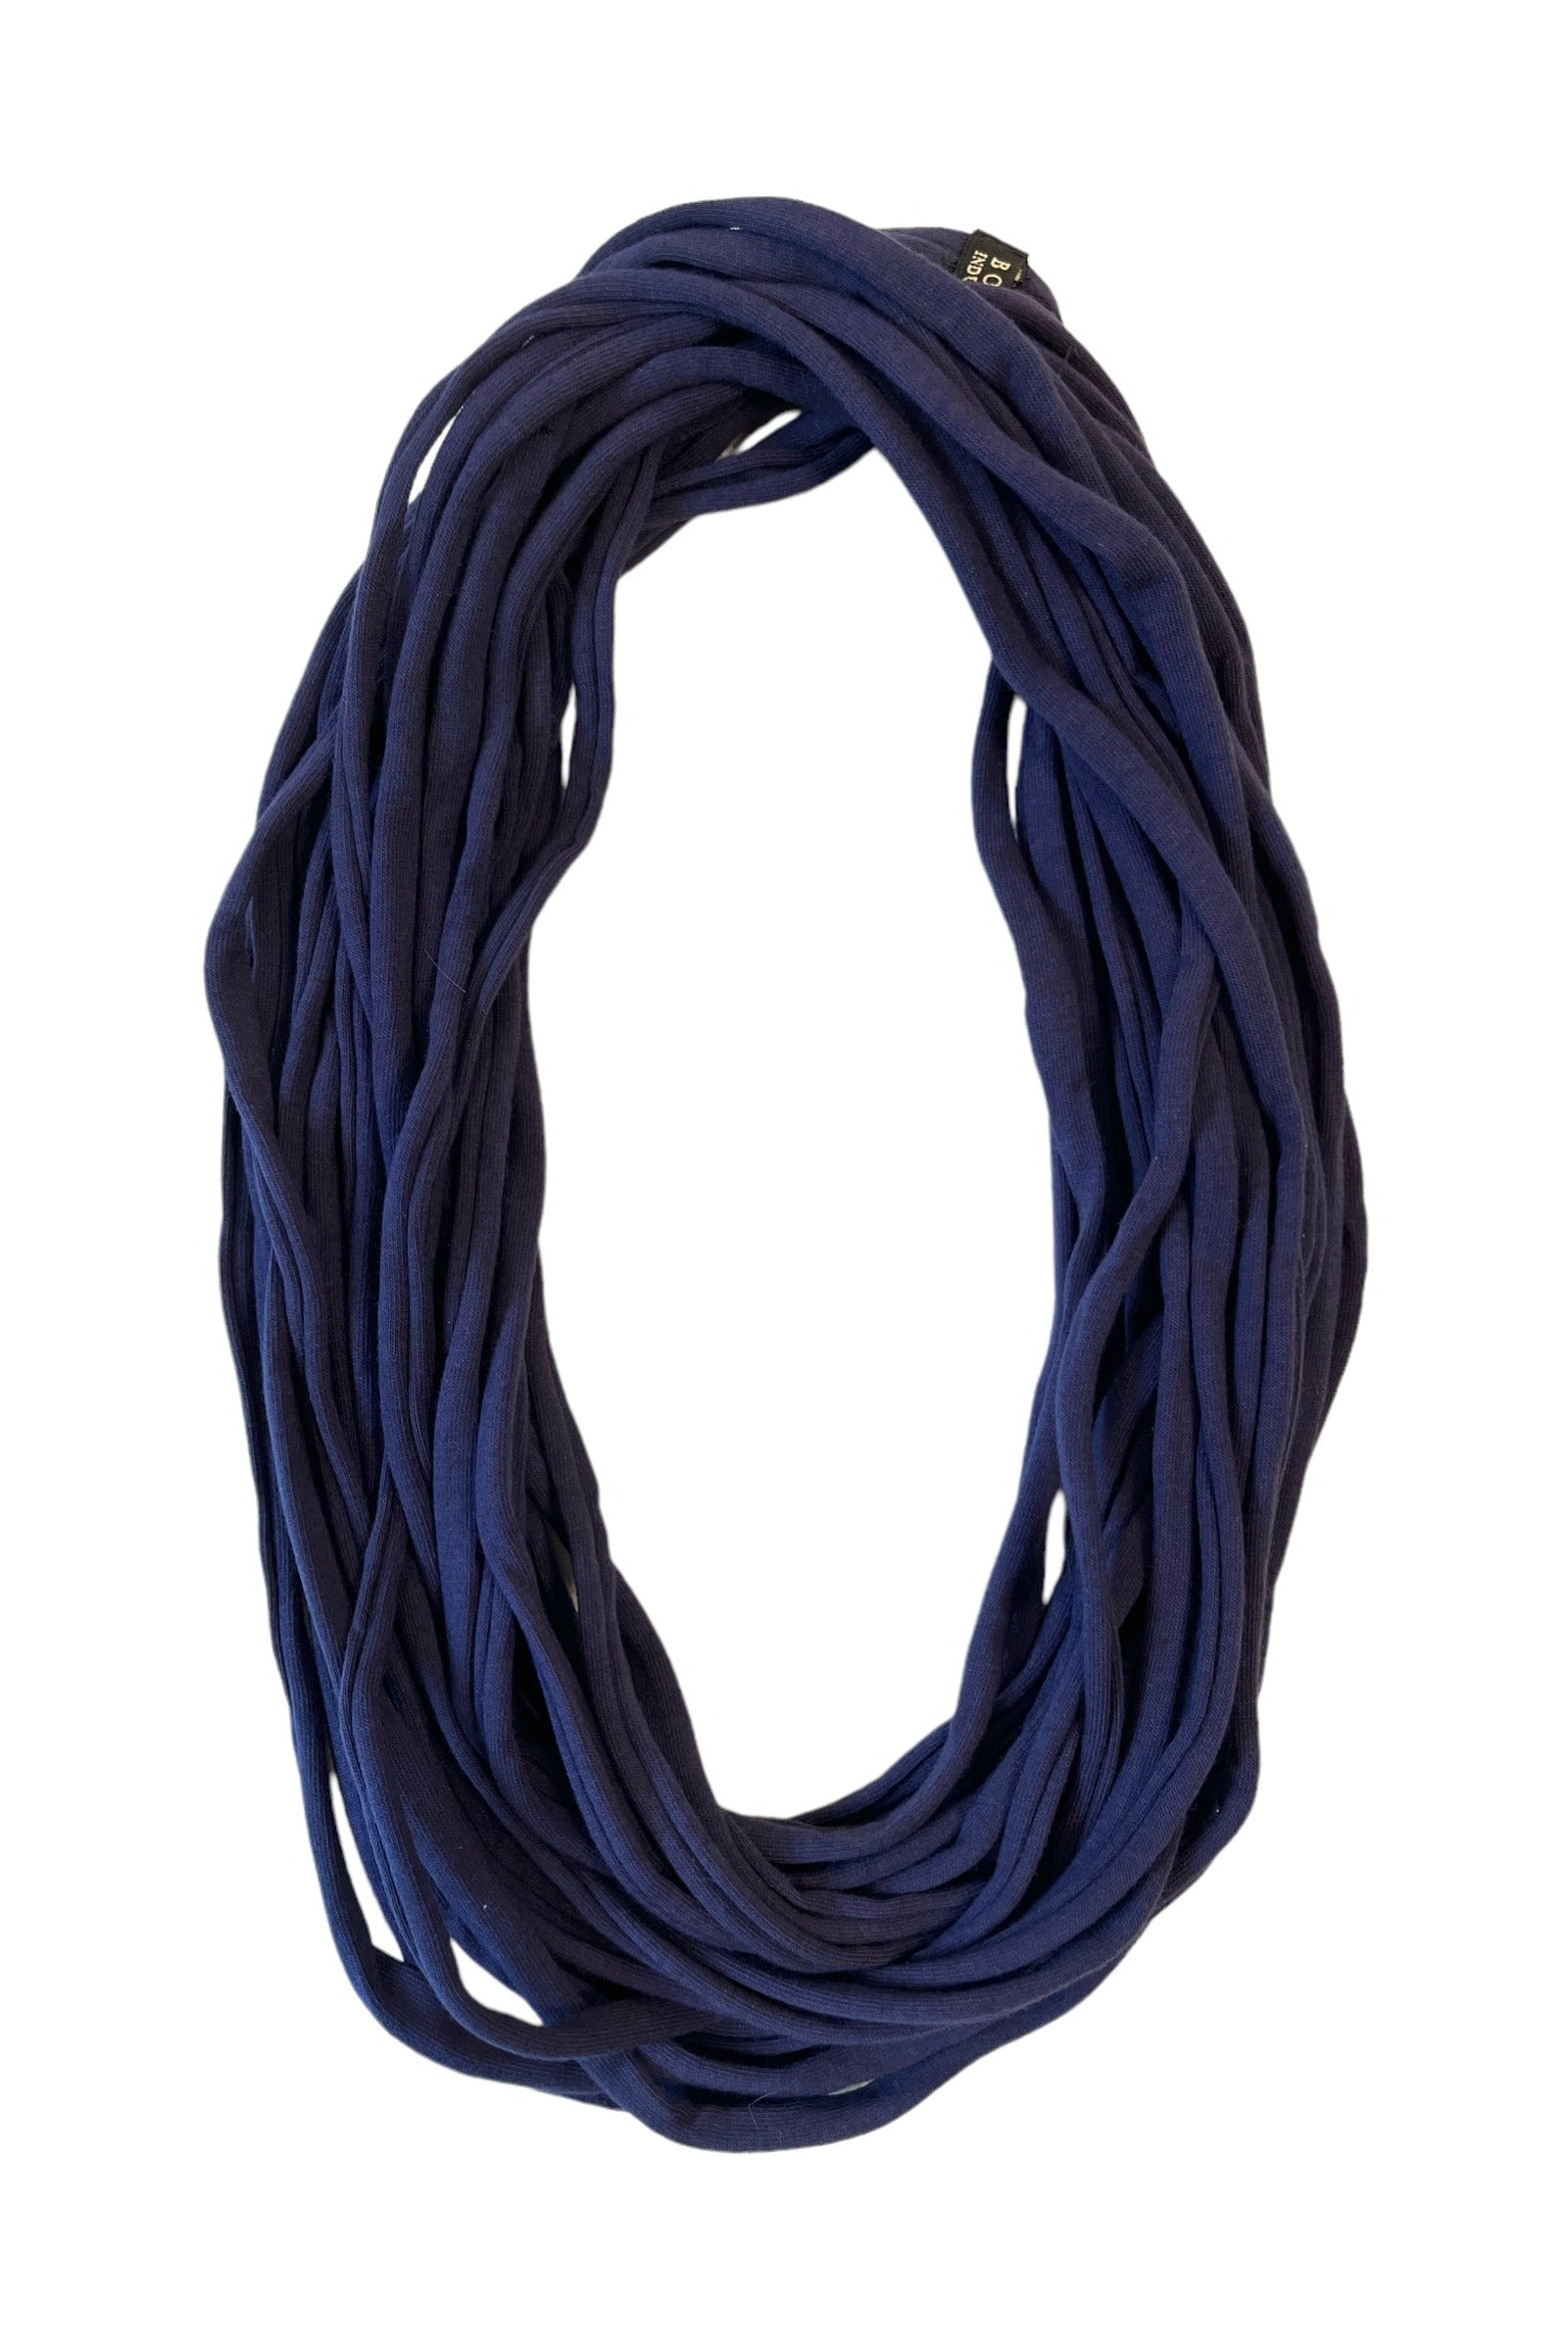 BORIS sjaal ketting - Marine blauw